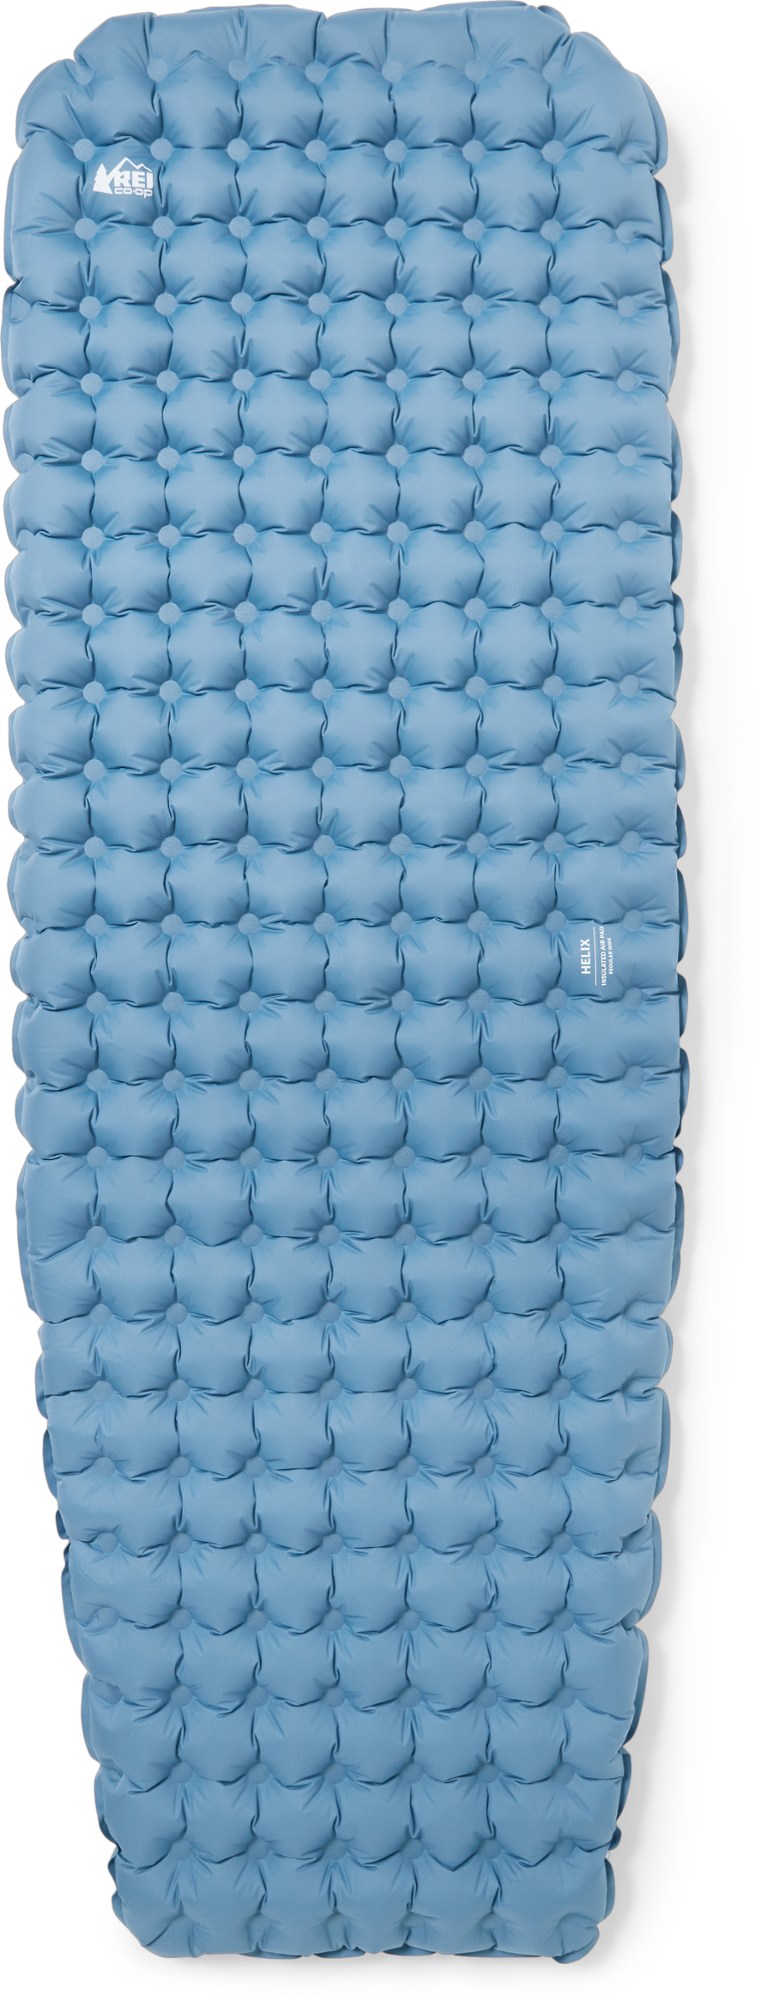 Изолированный воздушный спальный коврик Helix REI Co-op, синий